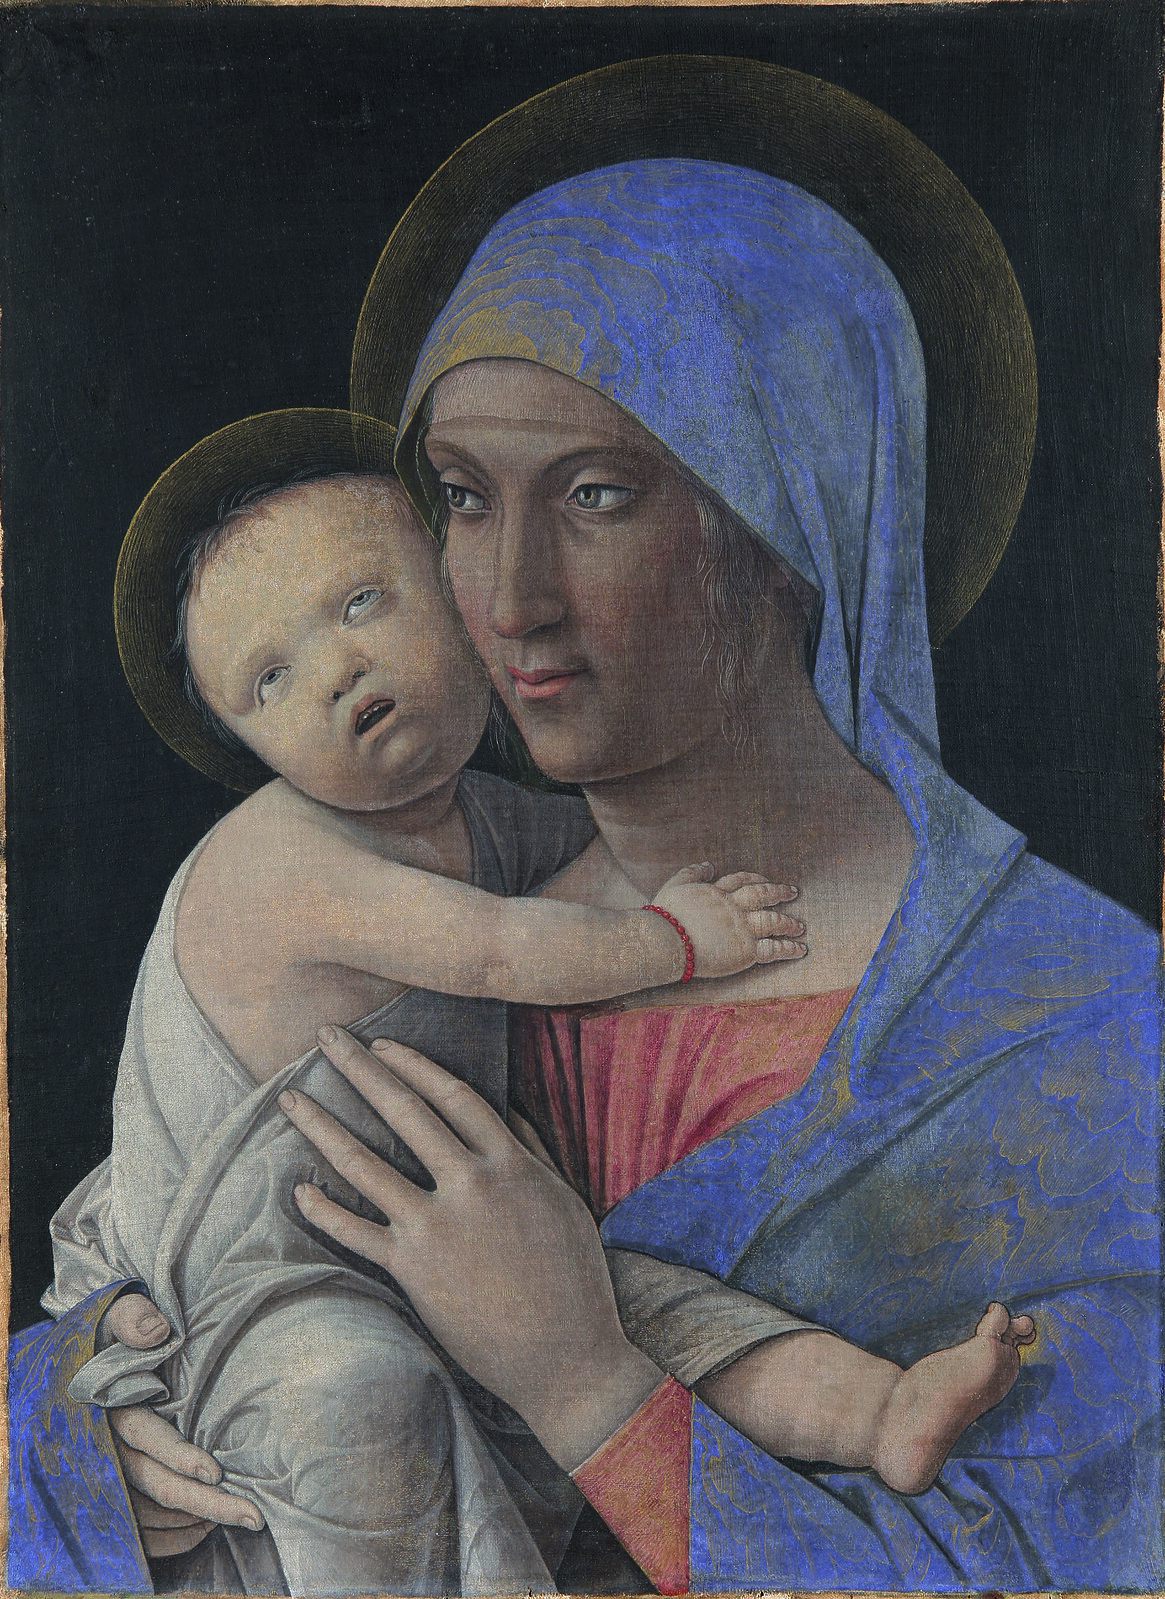 Bergamo, Accademia Carrara. Andrea Mantegna, Madonna and Child, 1480. Courtesy adicorbetta, Milano